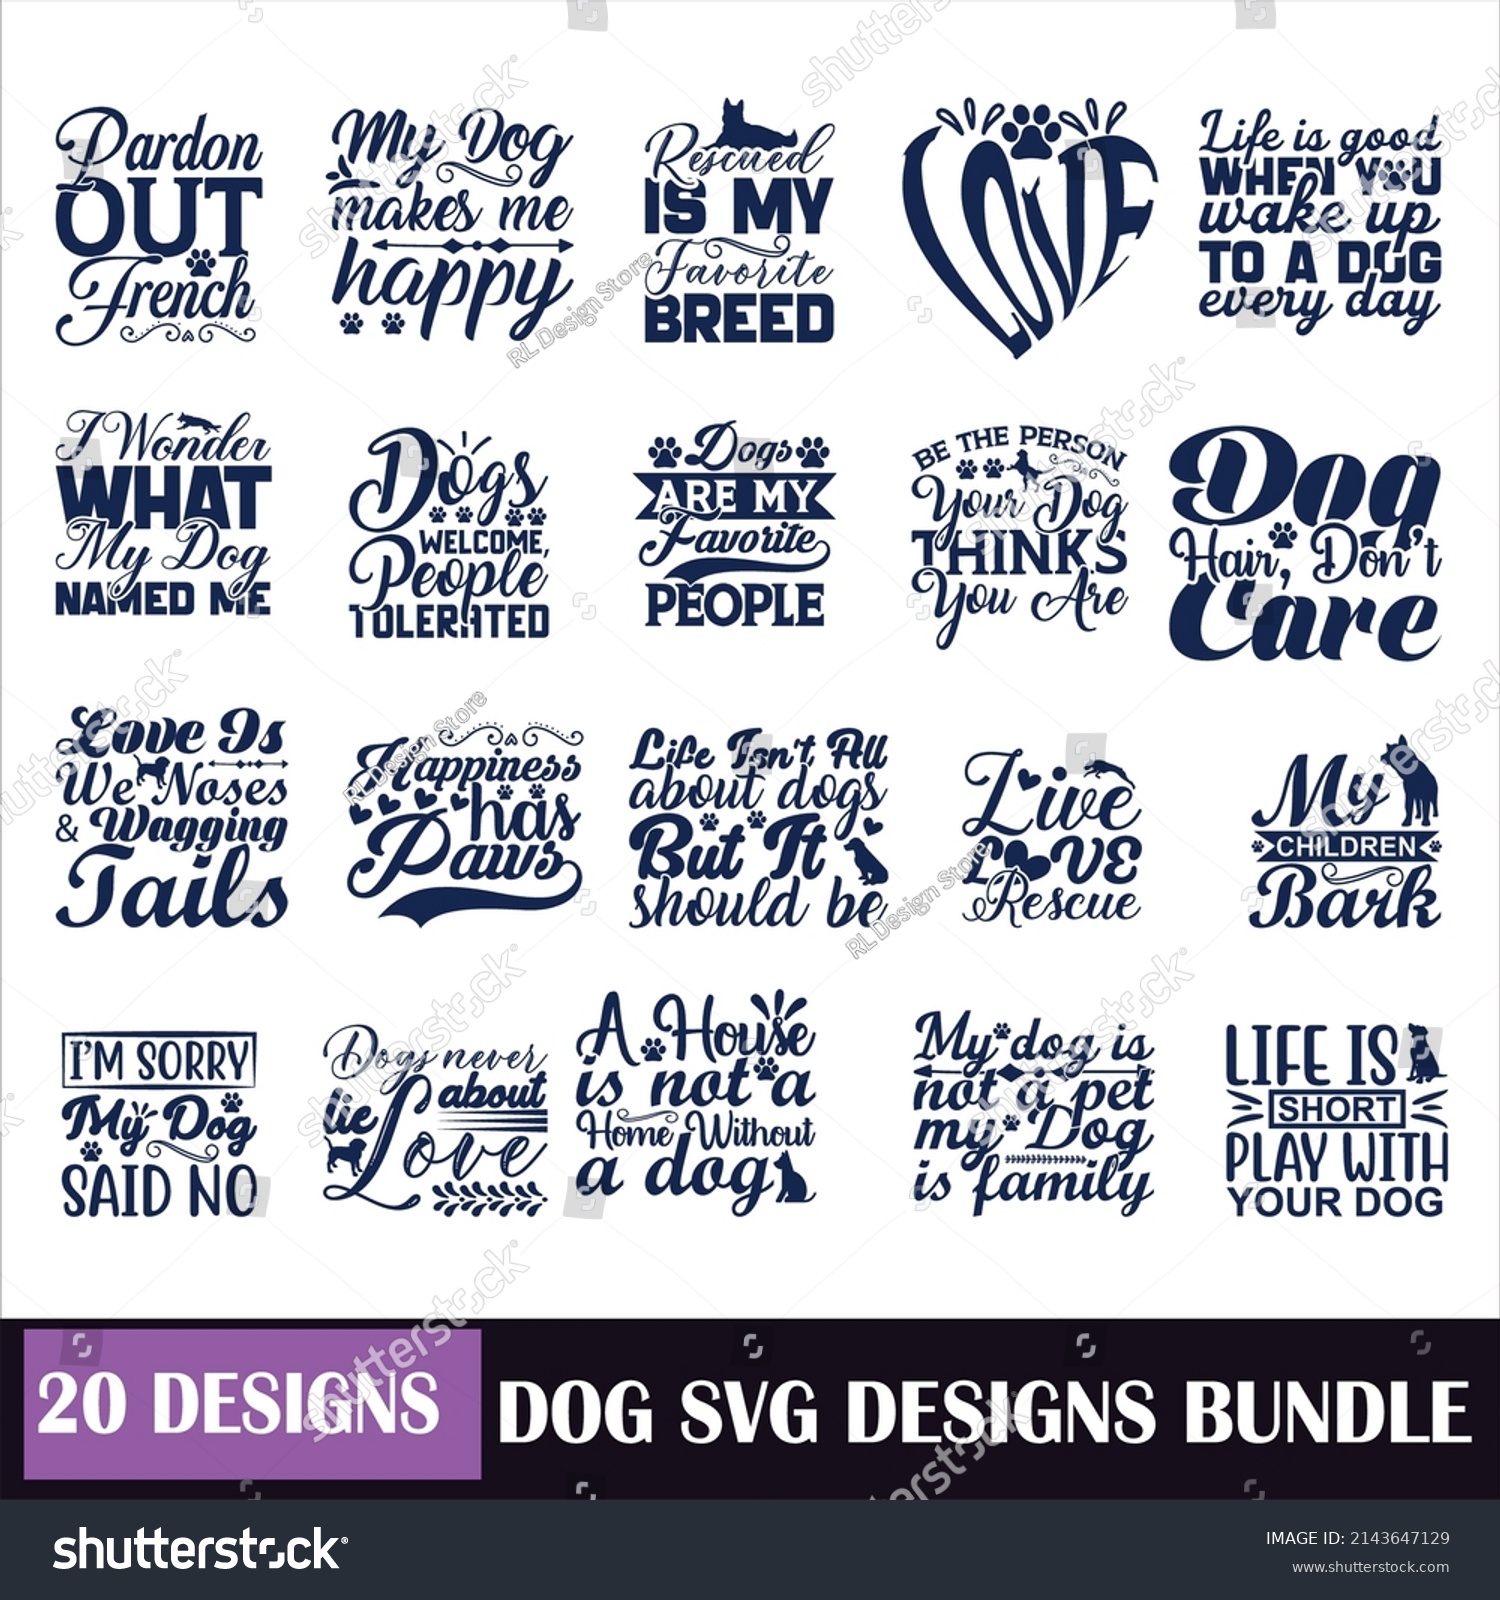 SVG of dog bone Quotes SVG Designs Bundle.dog  quotes SVG cut files bundle,  quotes t shirt designs bundle, Quotes Designs cut files, dog  eps files, cute .dog  vg files for  onesies. girl onesie svg, kitt svg